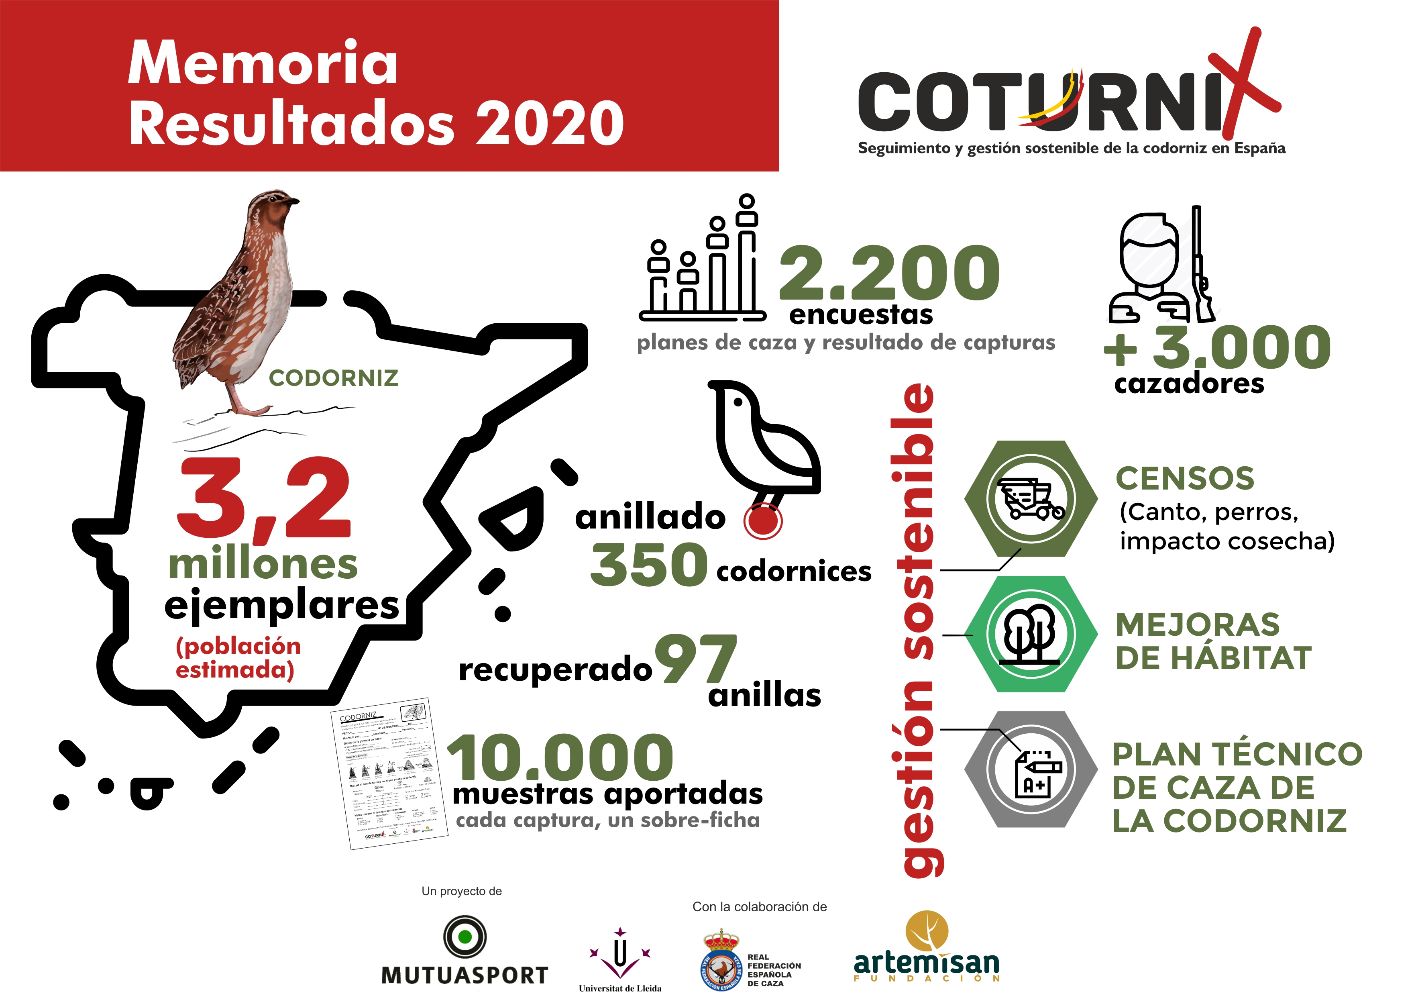 La codorniz mantiene un buen nivel de abundancia en España, con una estimación de 3,2 millones de ejemplares.